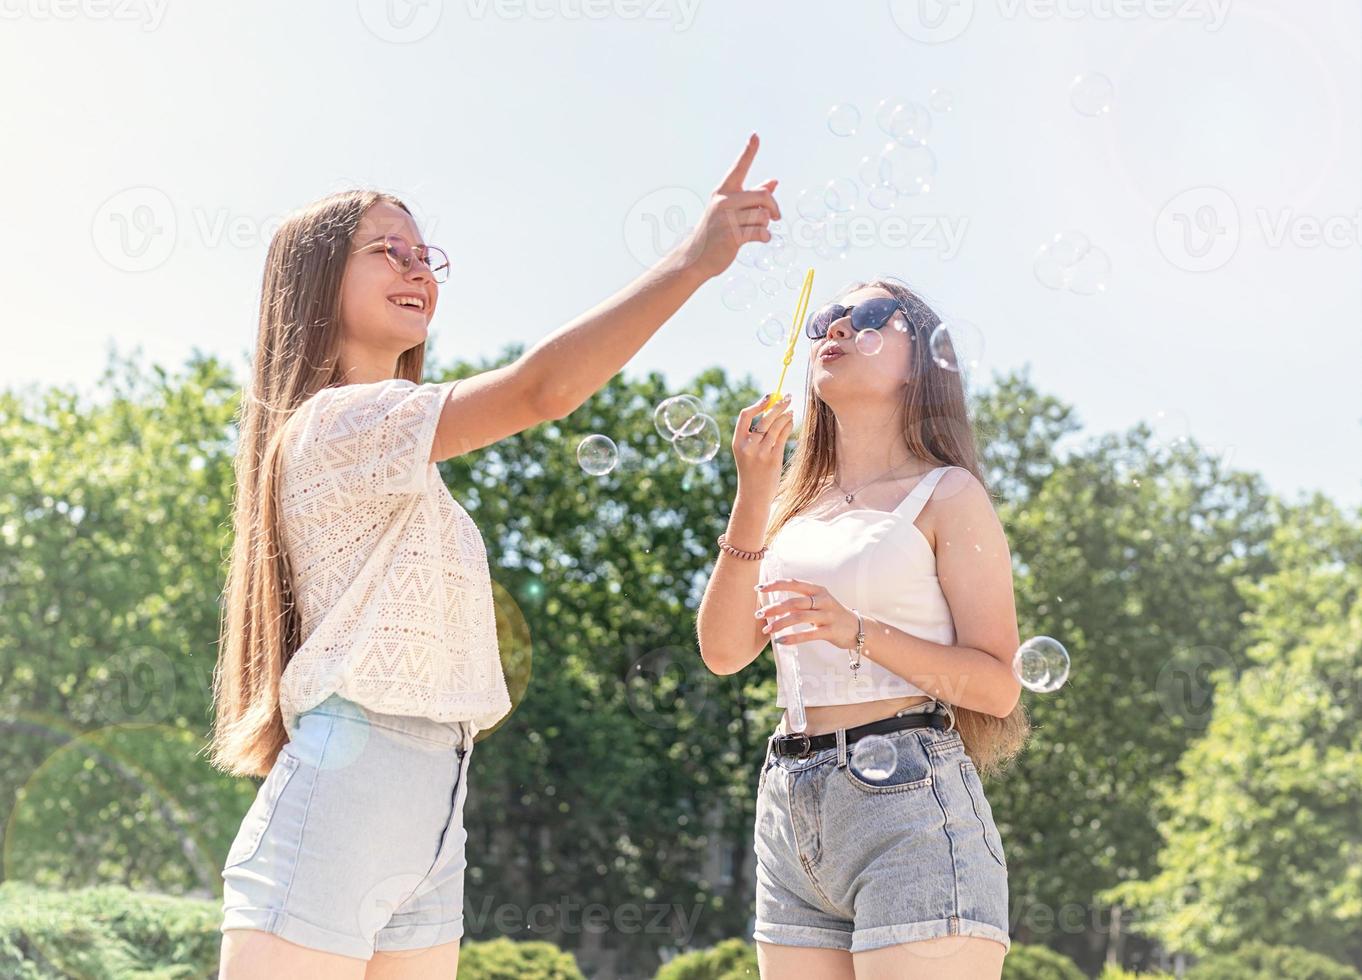 due amici si divertono fuori a fare bolle di sapone in un giorno d'estate foto